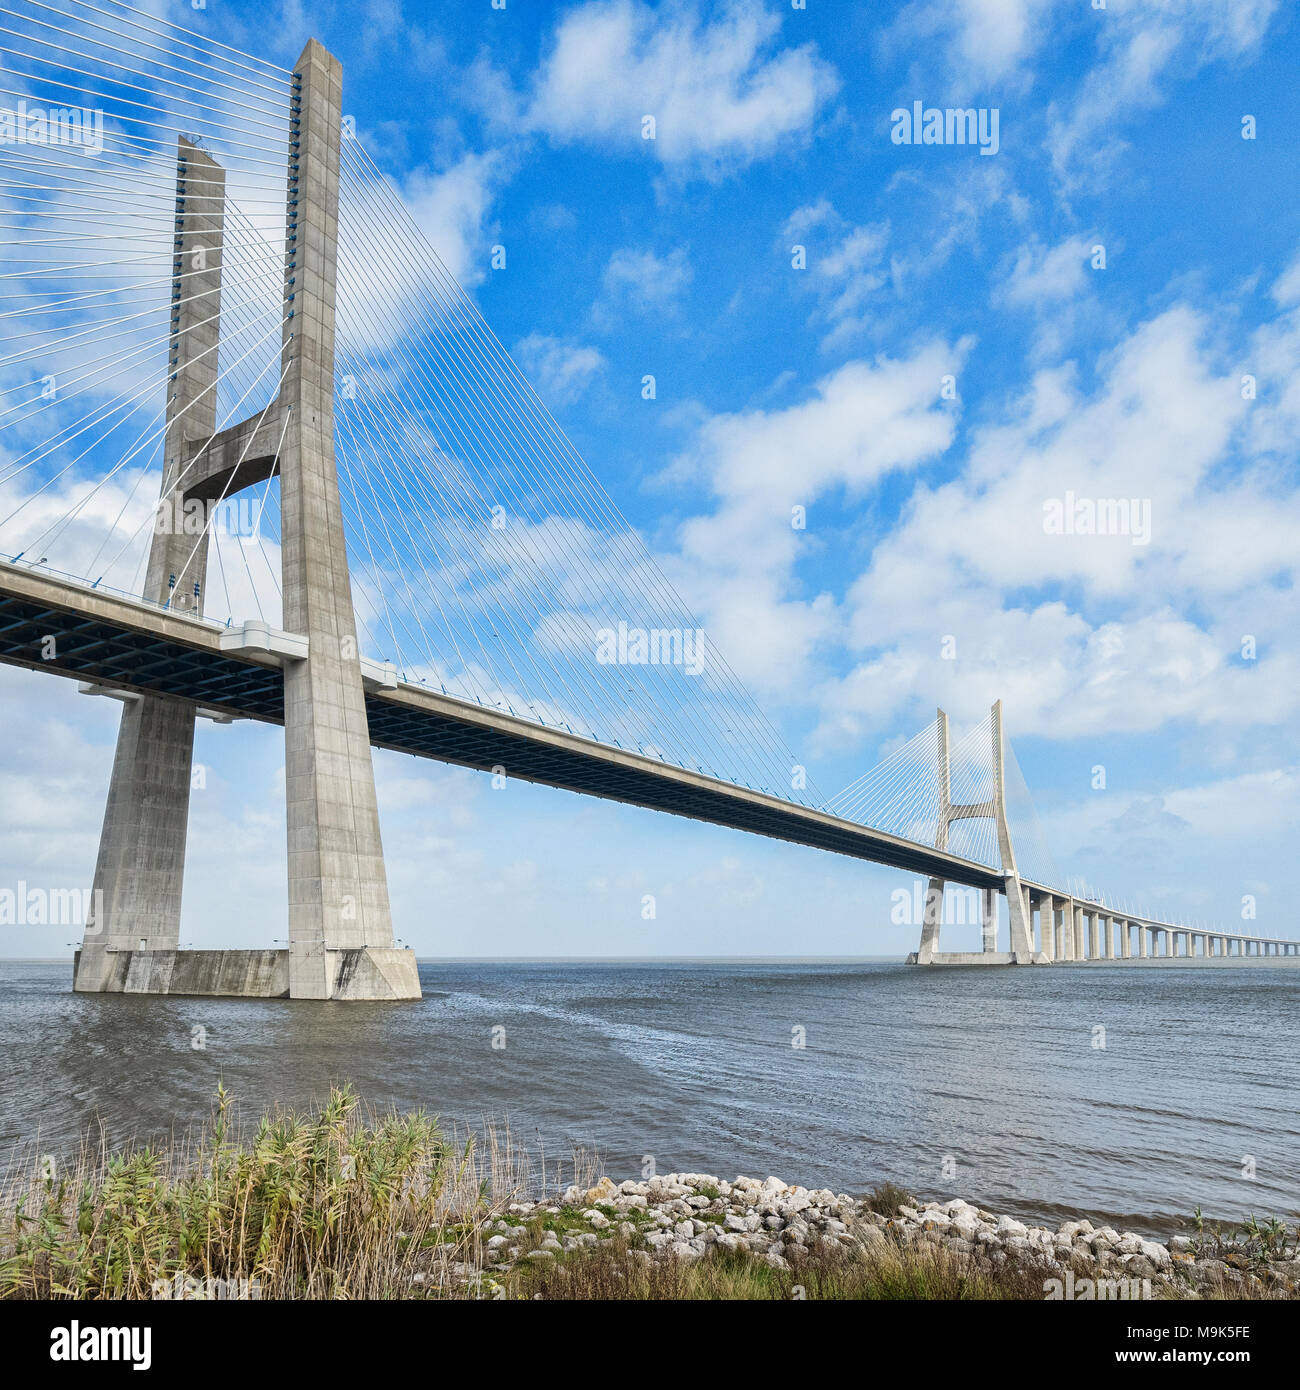 Ponte vasco da gama immagini e fotografie stock ad alta risoluzione - Alamy